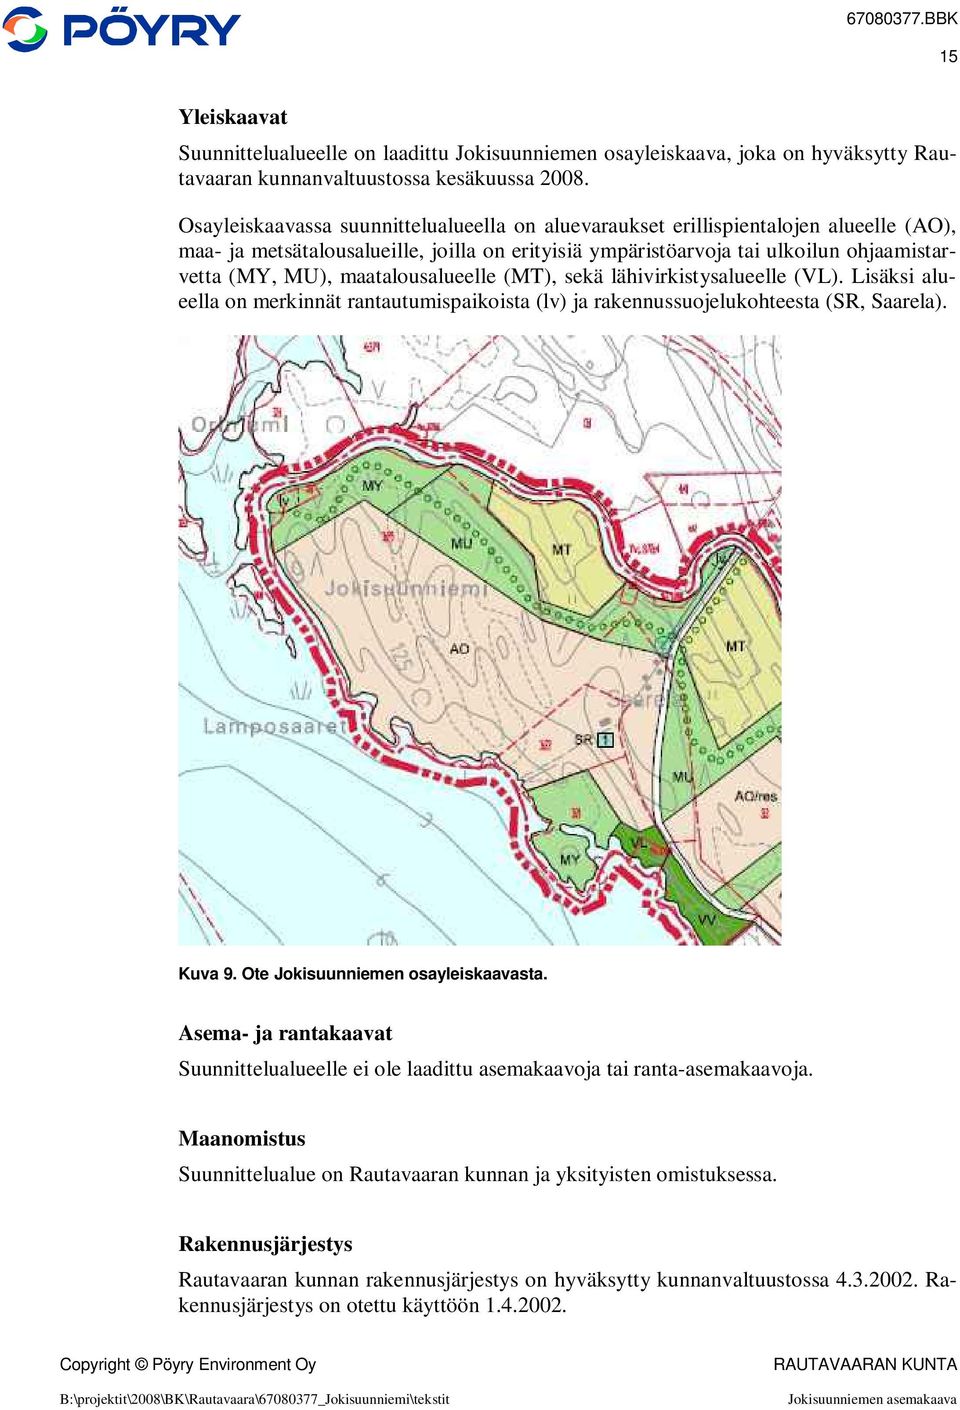 maatalousalueelle (MT), sekä lähivirkistysalueelle (VL). Lisäksi alueella on merkinnät rantautumispaikoista (lv) ja rakennussuojelukohteesta (SR, Saarela). Kuva 9. Ote Jokisuunniemen osayleiskaavasta.